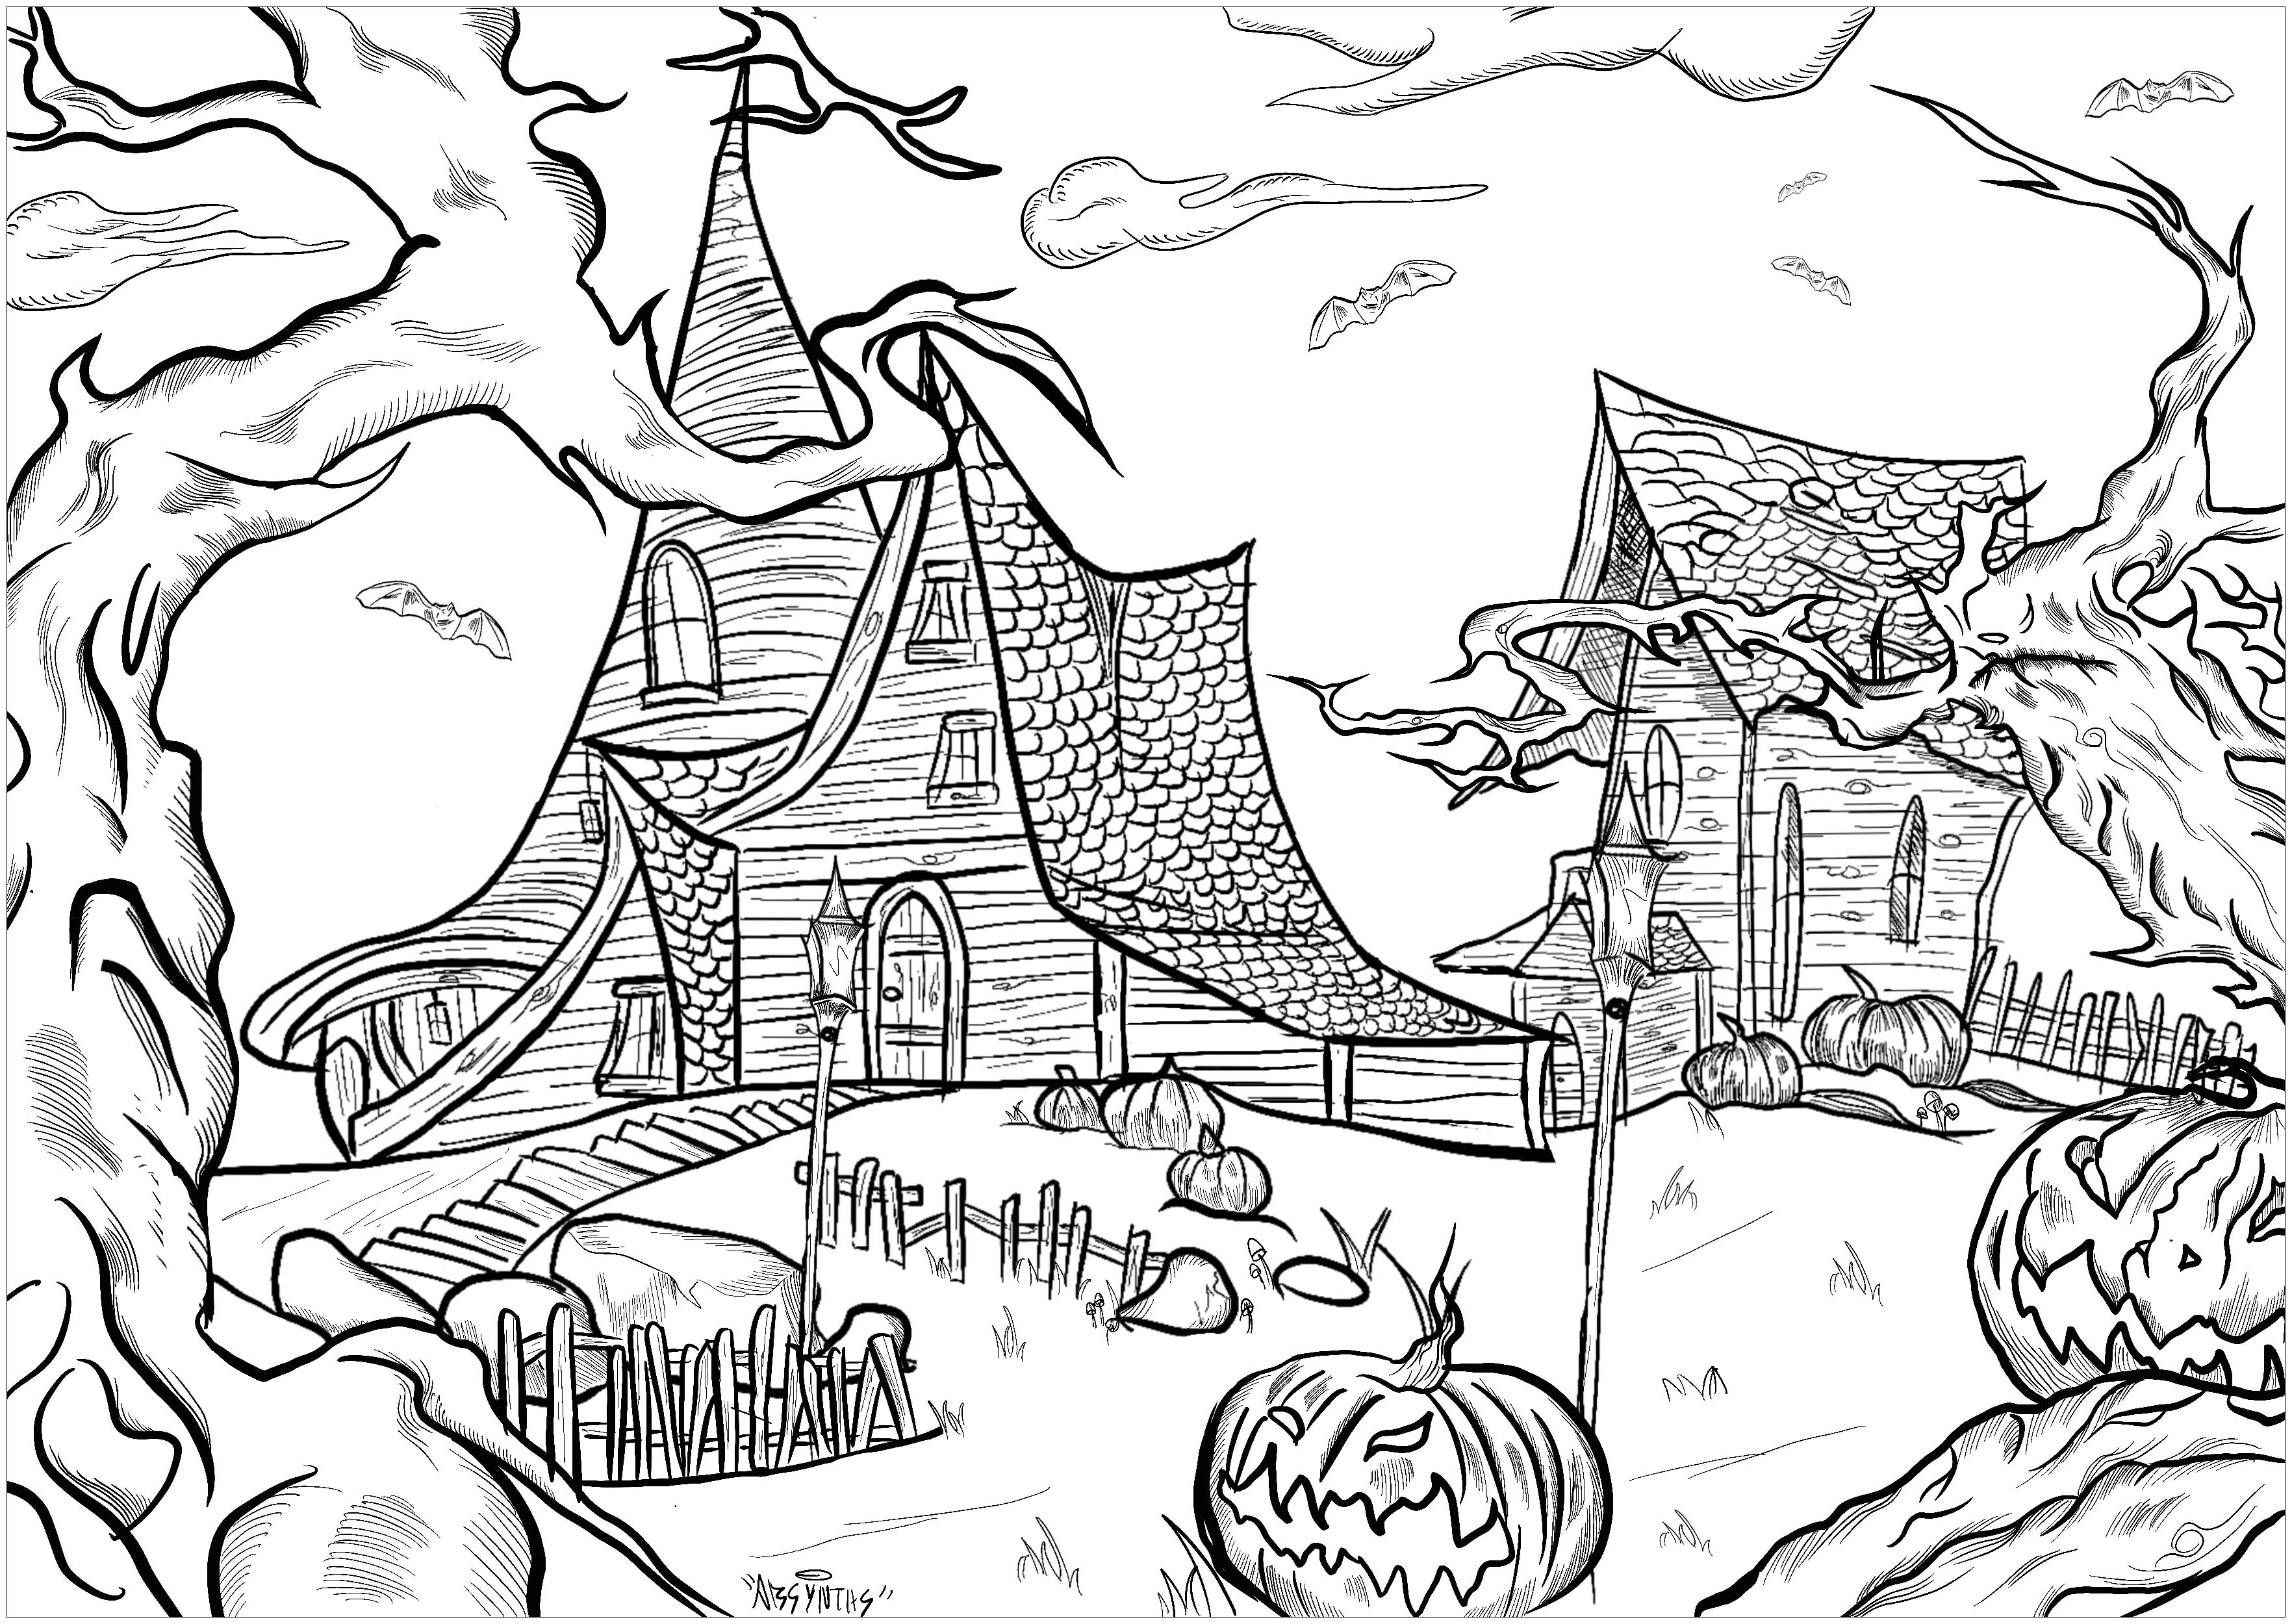 Zwei Spukhäuser in einer albtraumhaften Landschaft!. Bedrohliche Bäume, Halloween-Kürbisse, Fledermäuse ..., Künstler : Absynths